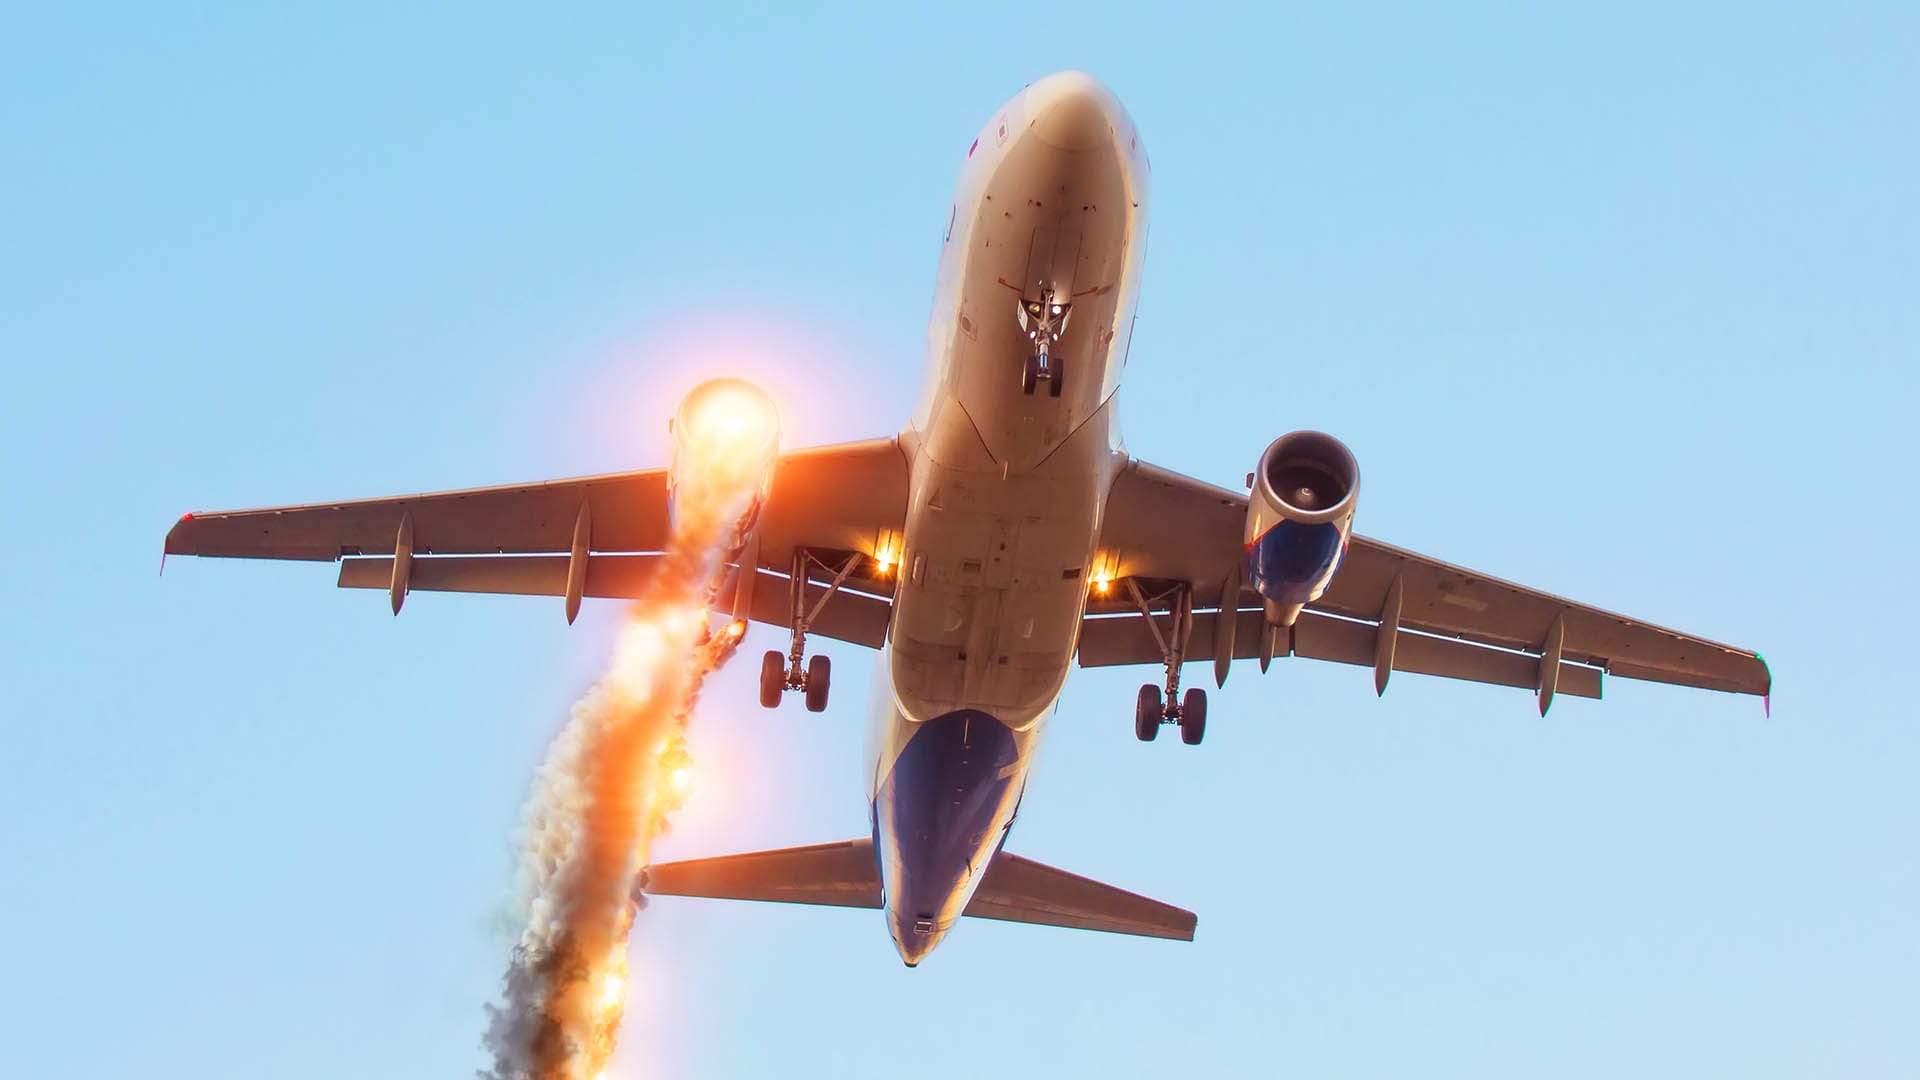 Pád letadla (ilustrační foto)